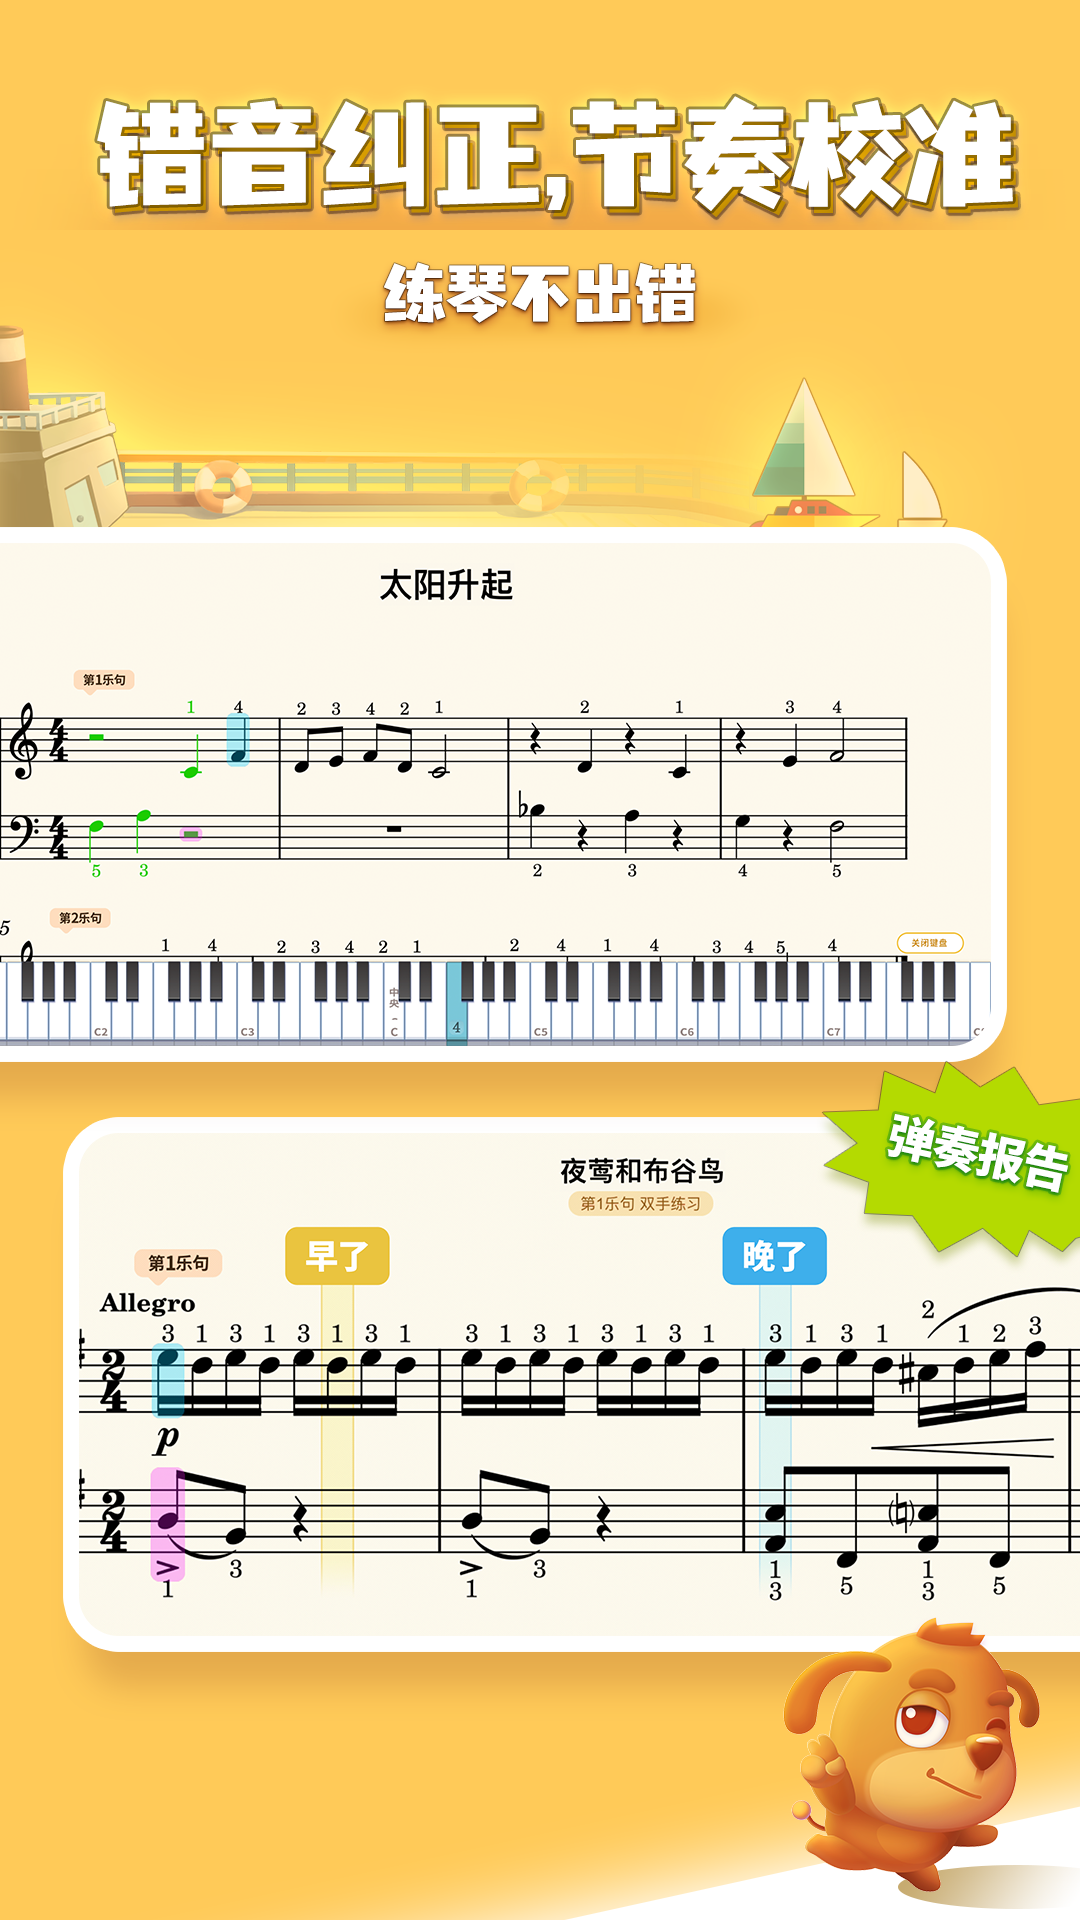 弹琴吧钢琴陪练appv2.7 最新版(钢琴网上陪练)_弹琴吧钢琴陪练下载